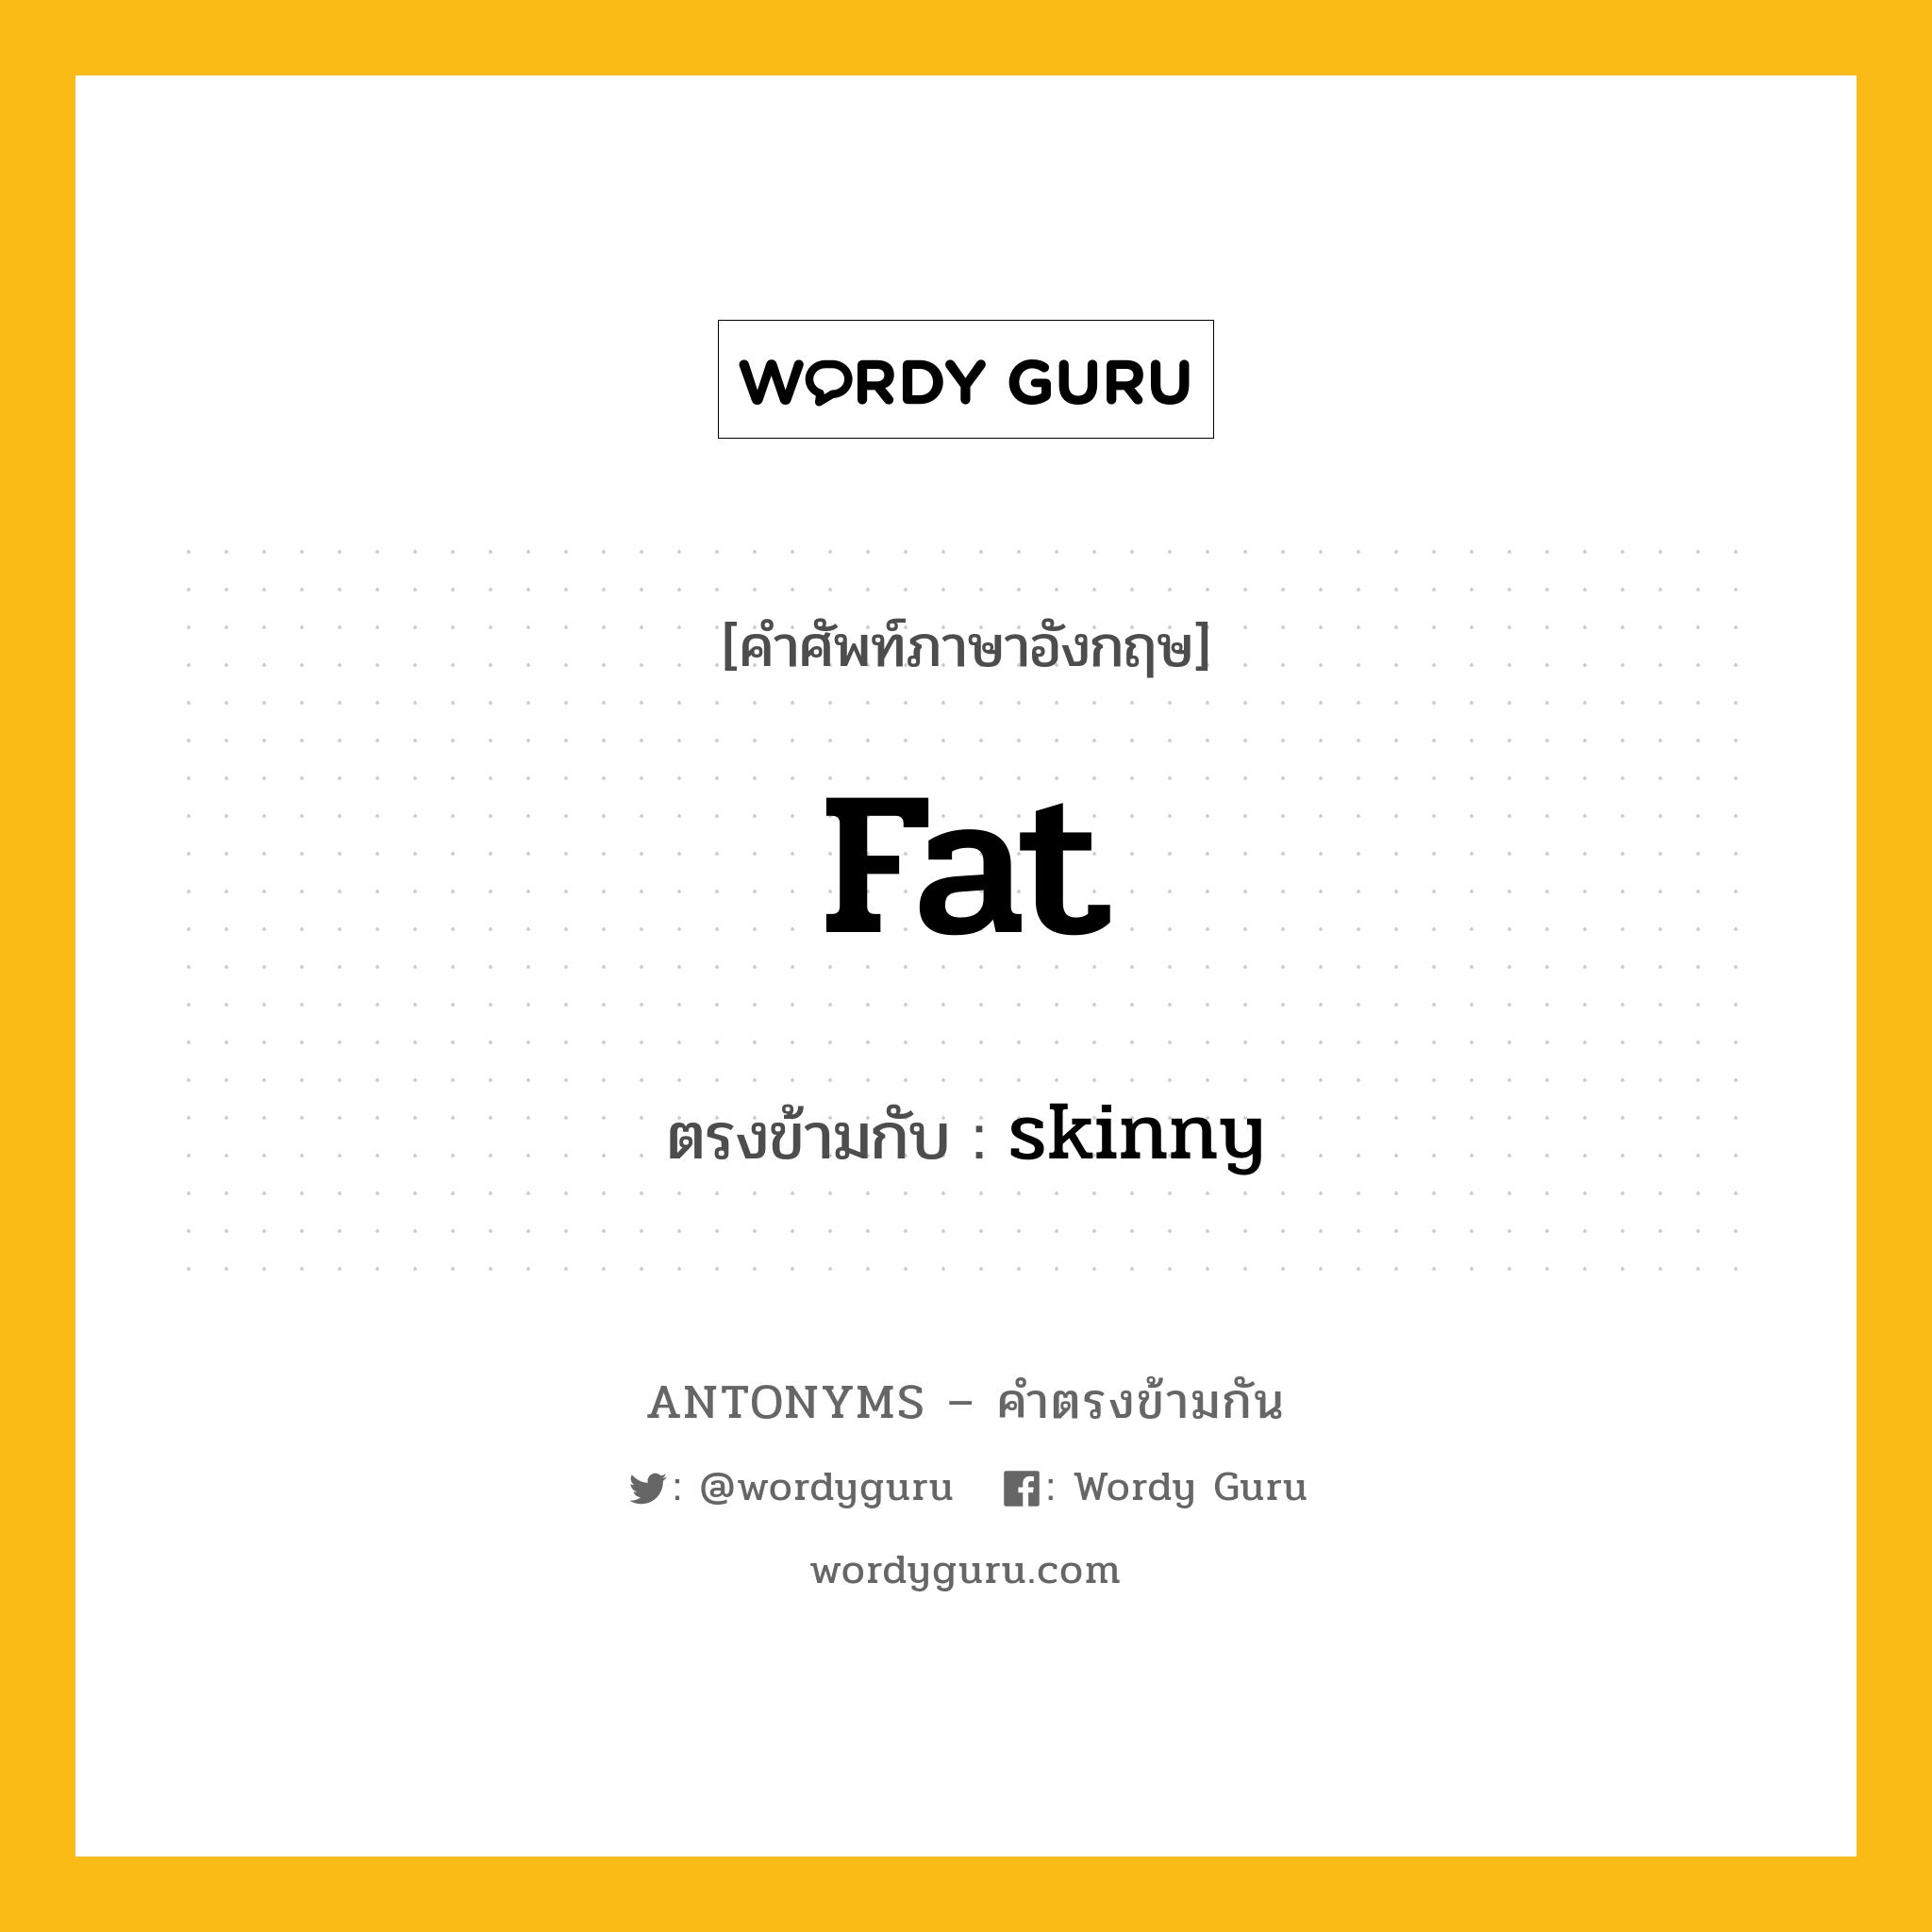 fat เป็นคำตรงข้ามกับคำไหนบ้าง?, คำศัพท์ภาษาอังกฤษ fat ตรงข้ามกับ skinny หมวด skinny